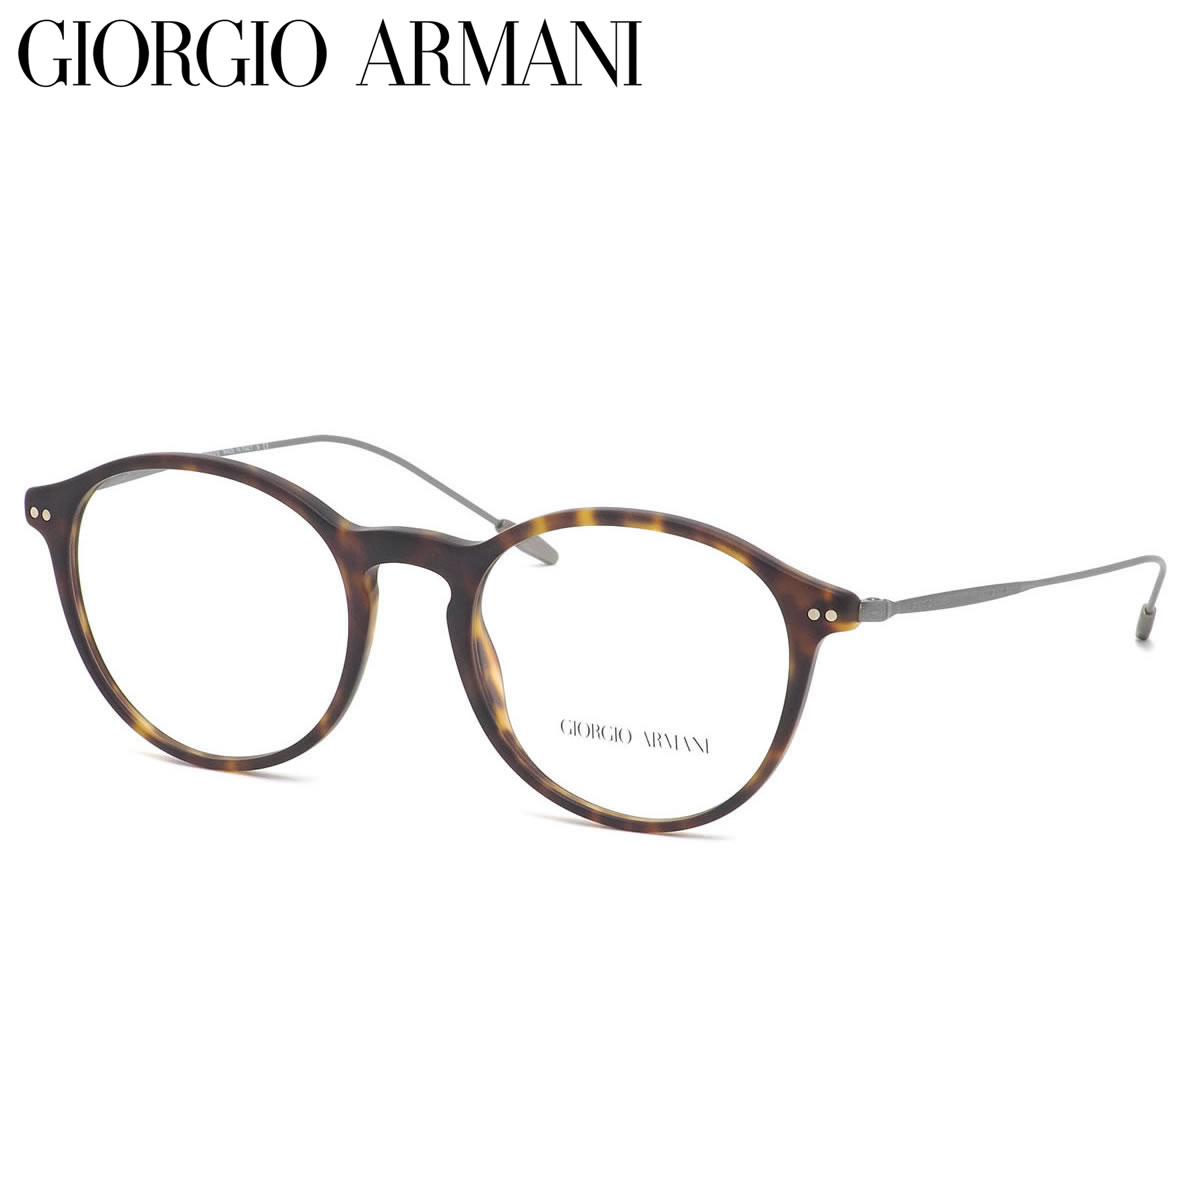 GIORGIO ARMANI ジョルジオアルマーニ メガネ AR7152 5089 51サイズ FRAMES OF LIFE アルマーニ クラシック モード ボストン ジョルジオアルマーニGIORGIOARMANI メンズ レディース 眼鏡